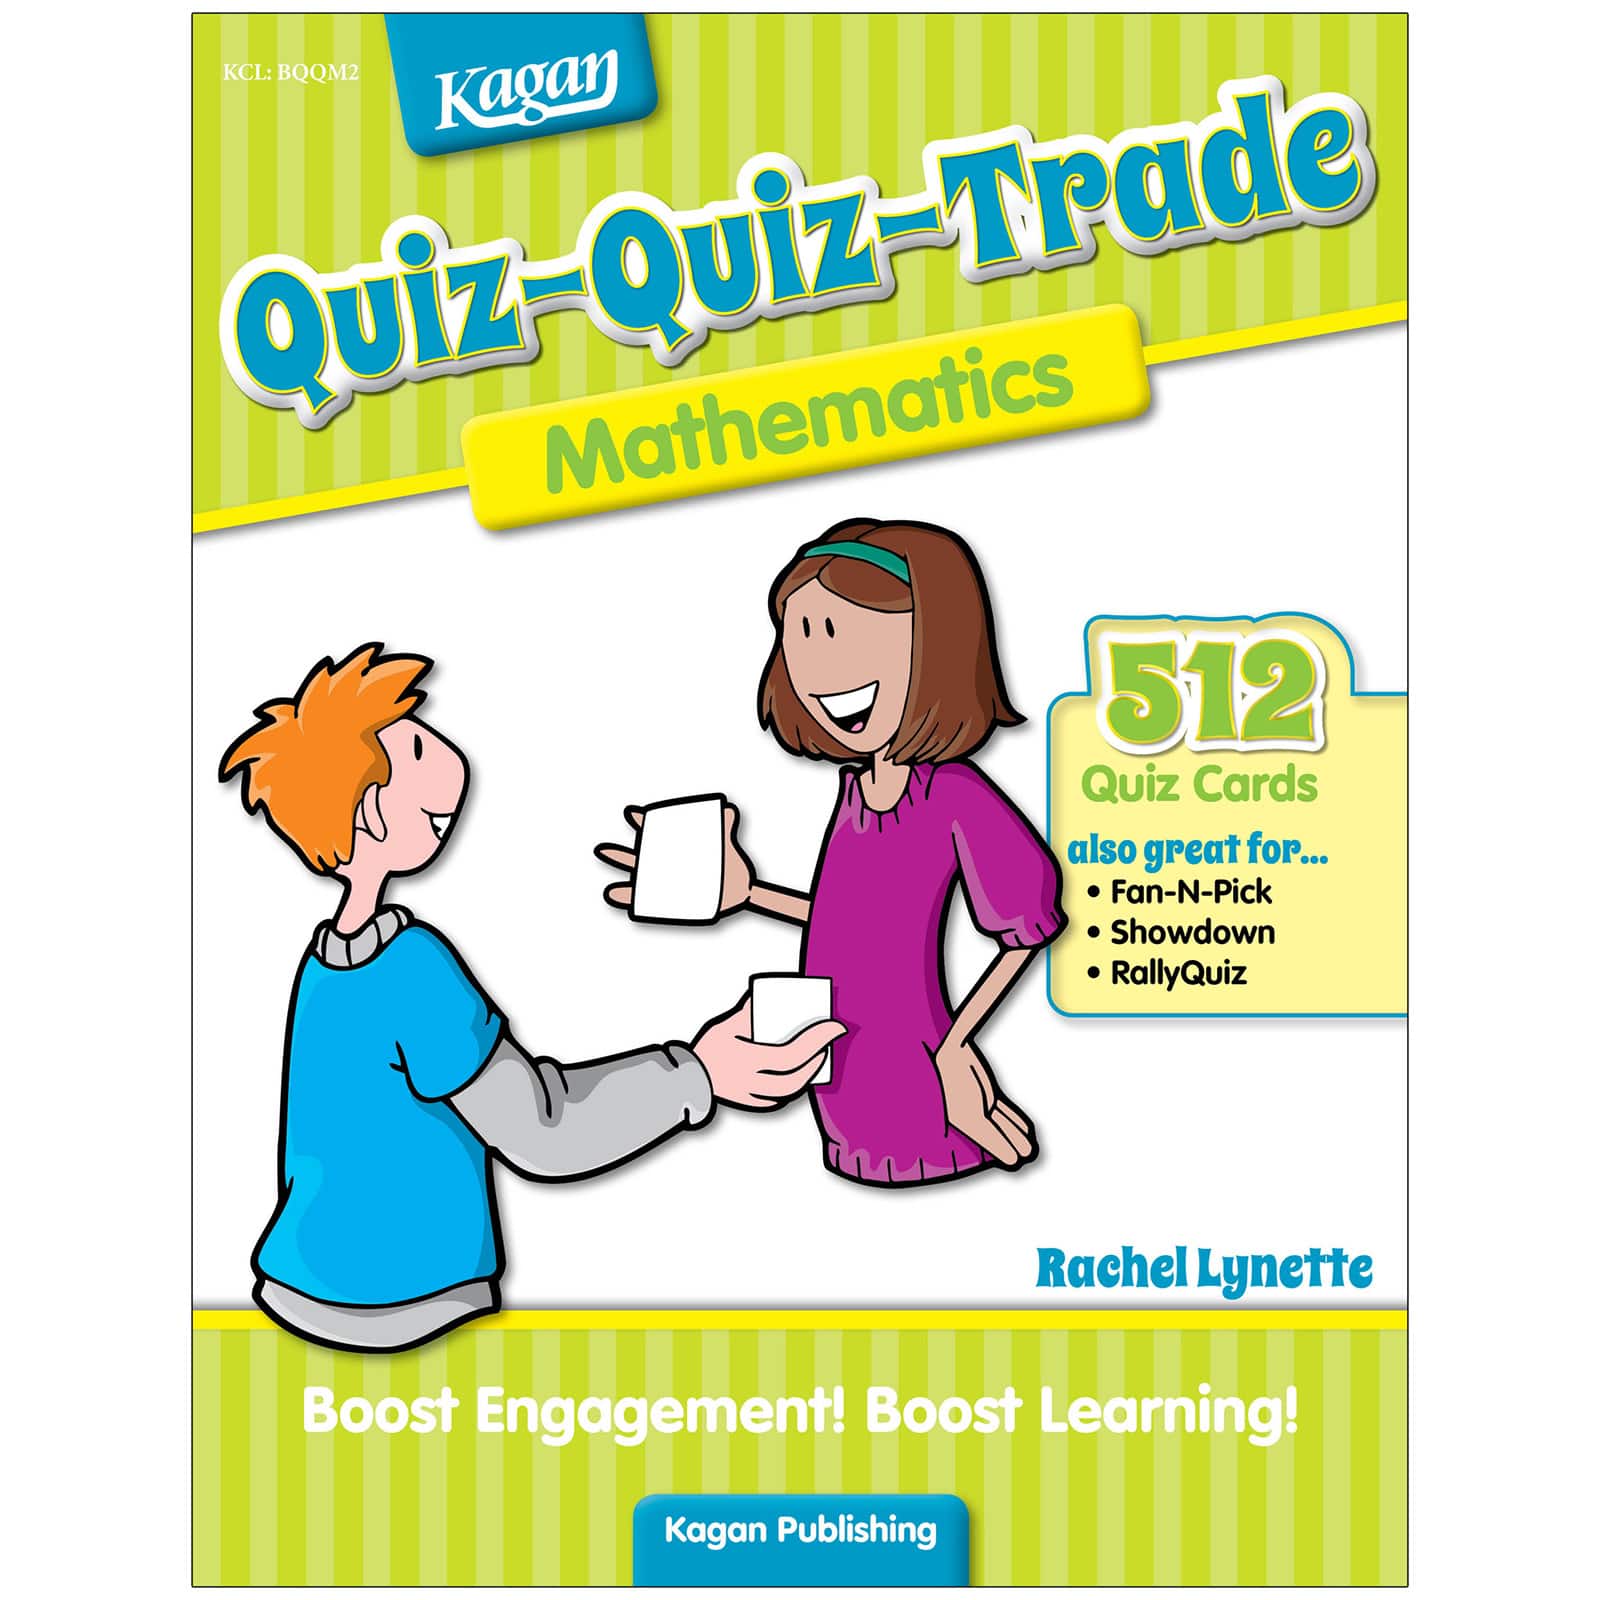 Kagan Publishing Design Quiz-Quiz-Trade: Mathematics, Grades 2-4